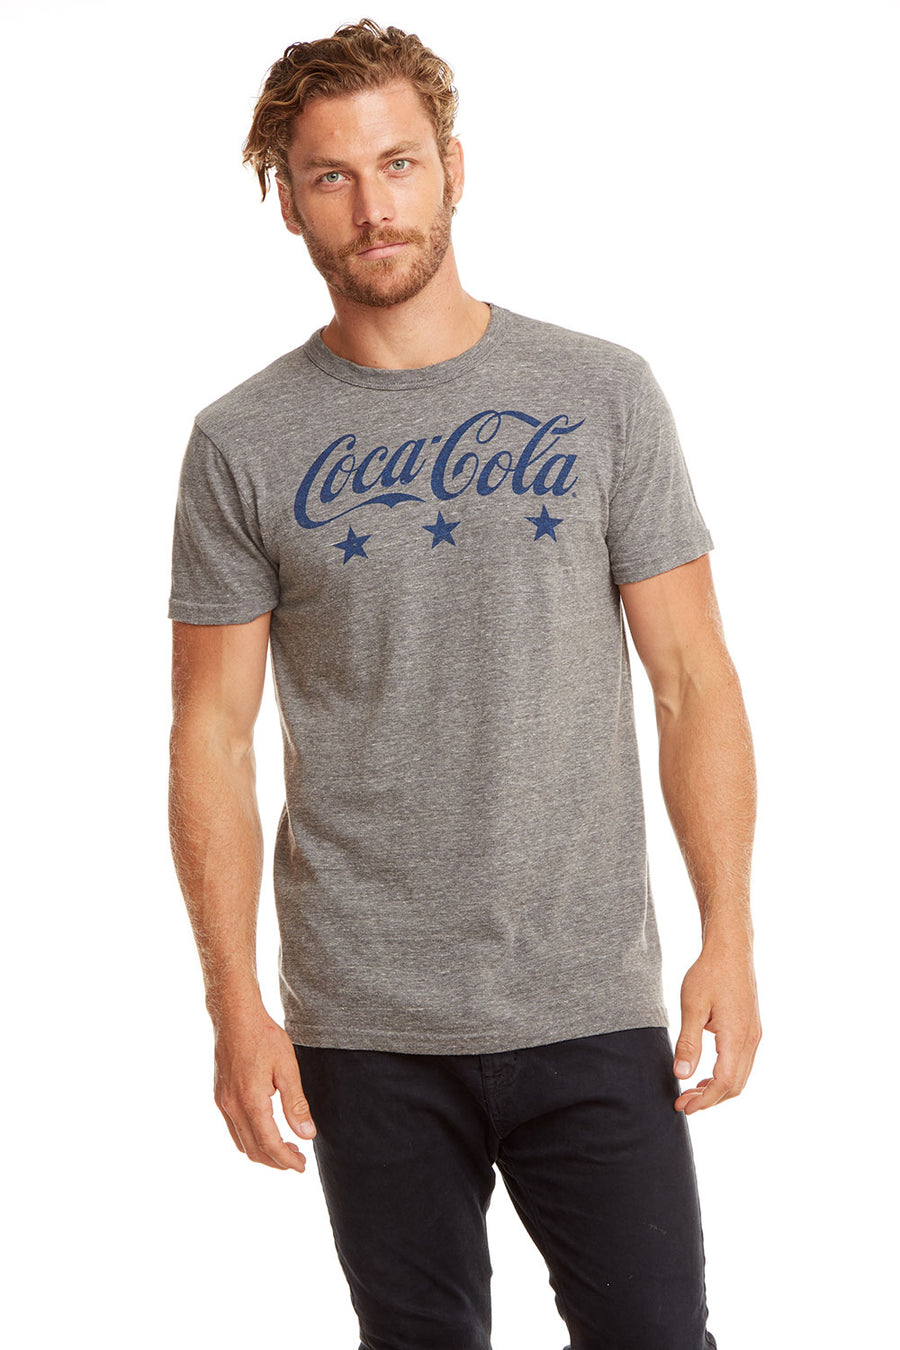 Coca Cola - Coca-Cola Stars MENS - chaserbrand